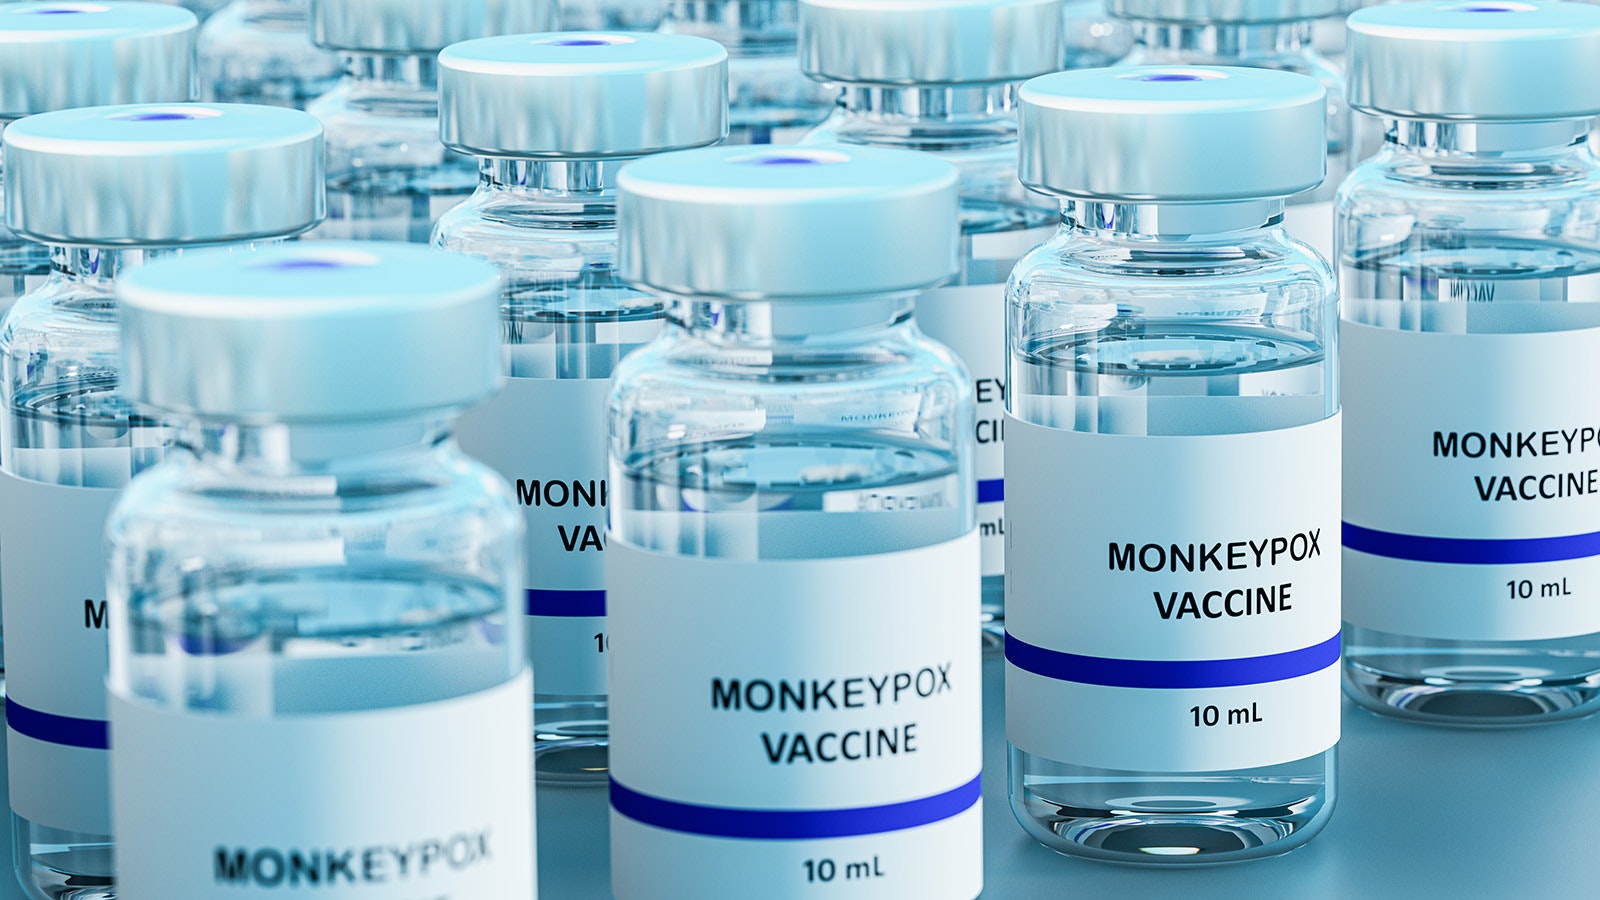 Monkeypox vaccine 9 27 22